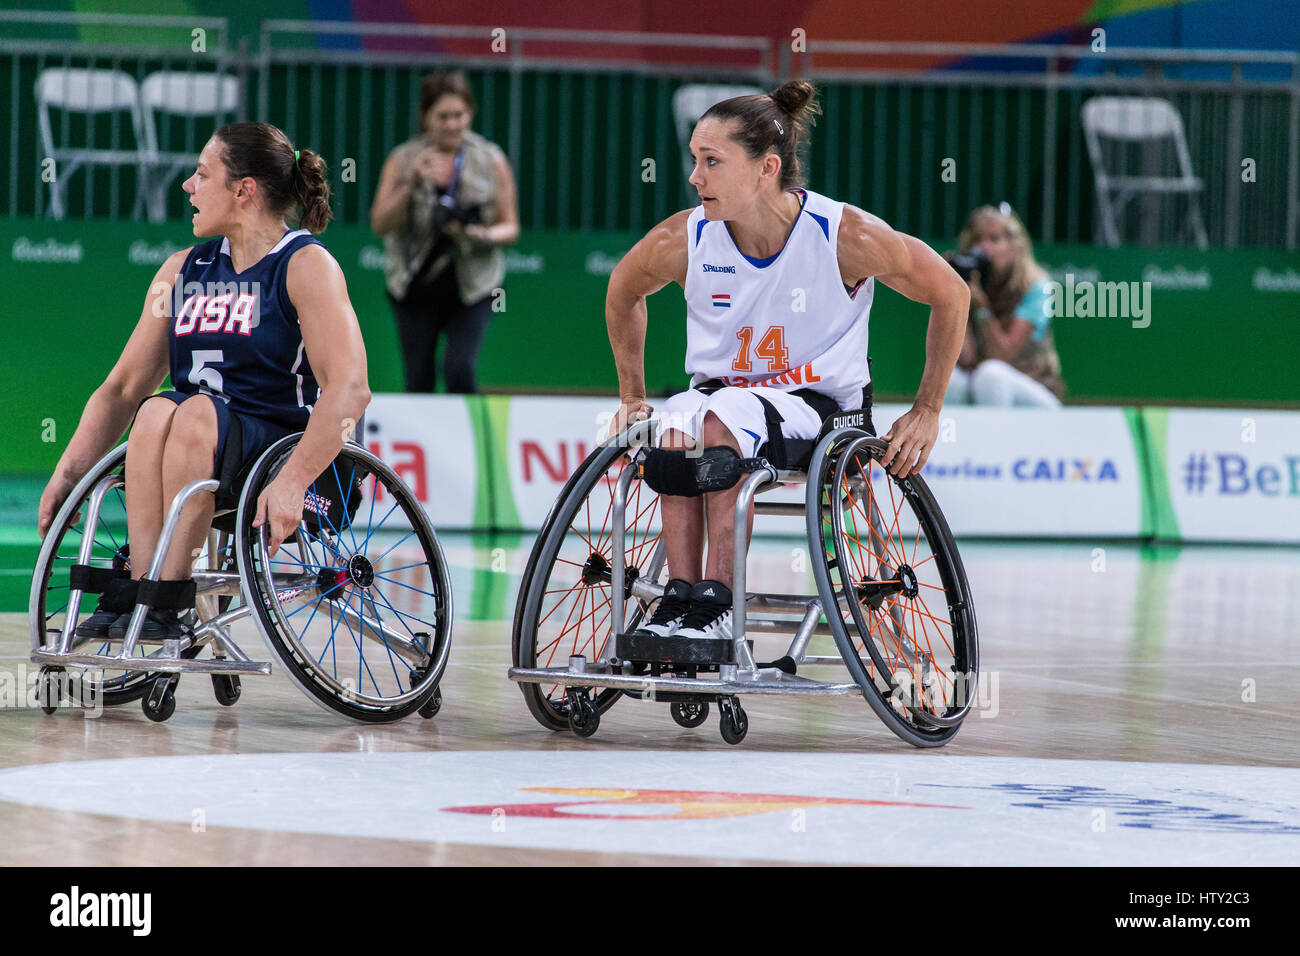 Au cours de la compétition de basket-ball en fauteuil roulant aux Jeux paralympiques d'été de Rio 2016 Banque D'Images